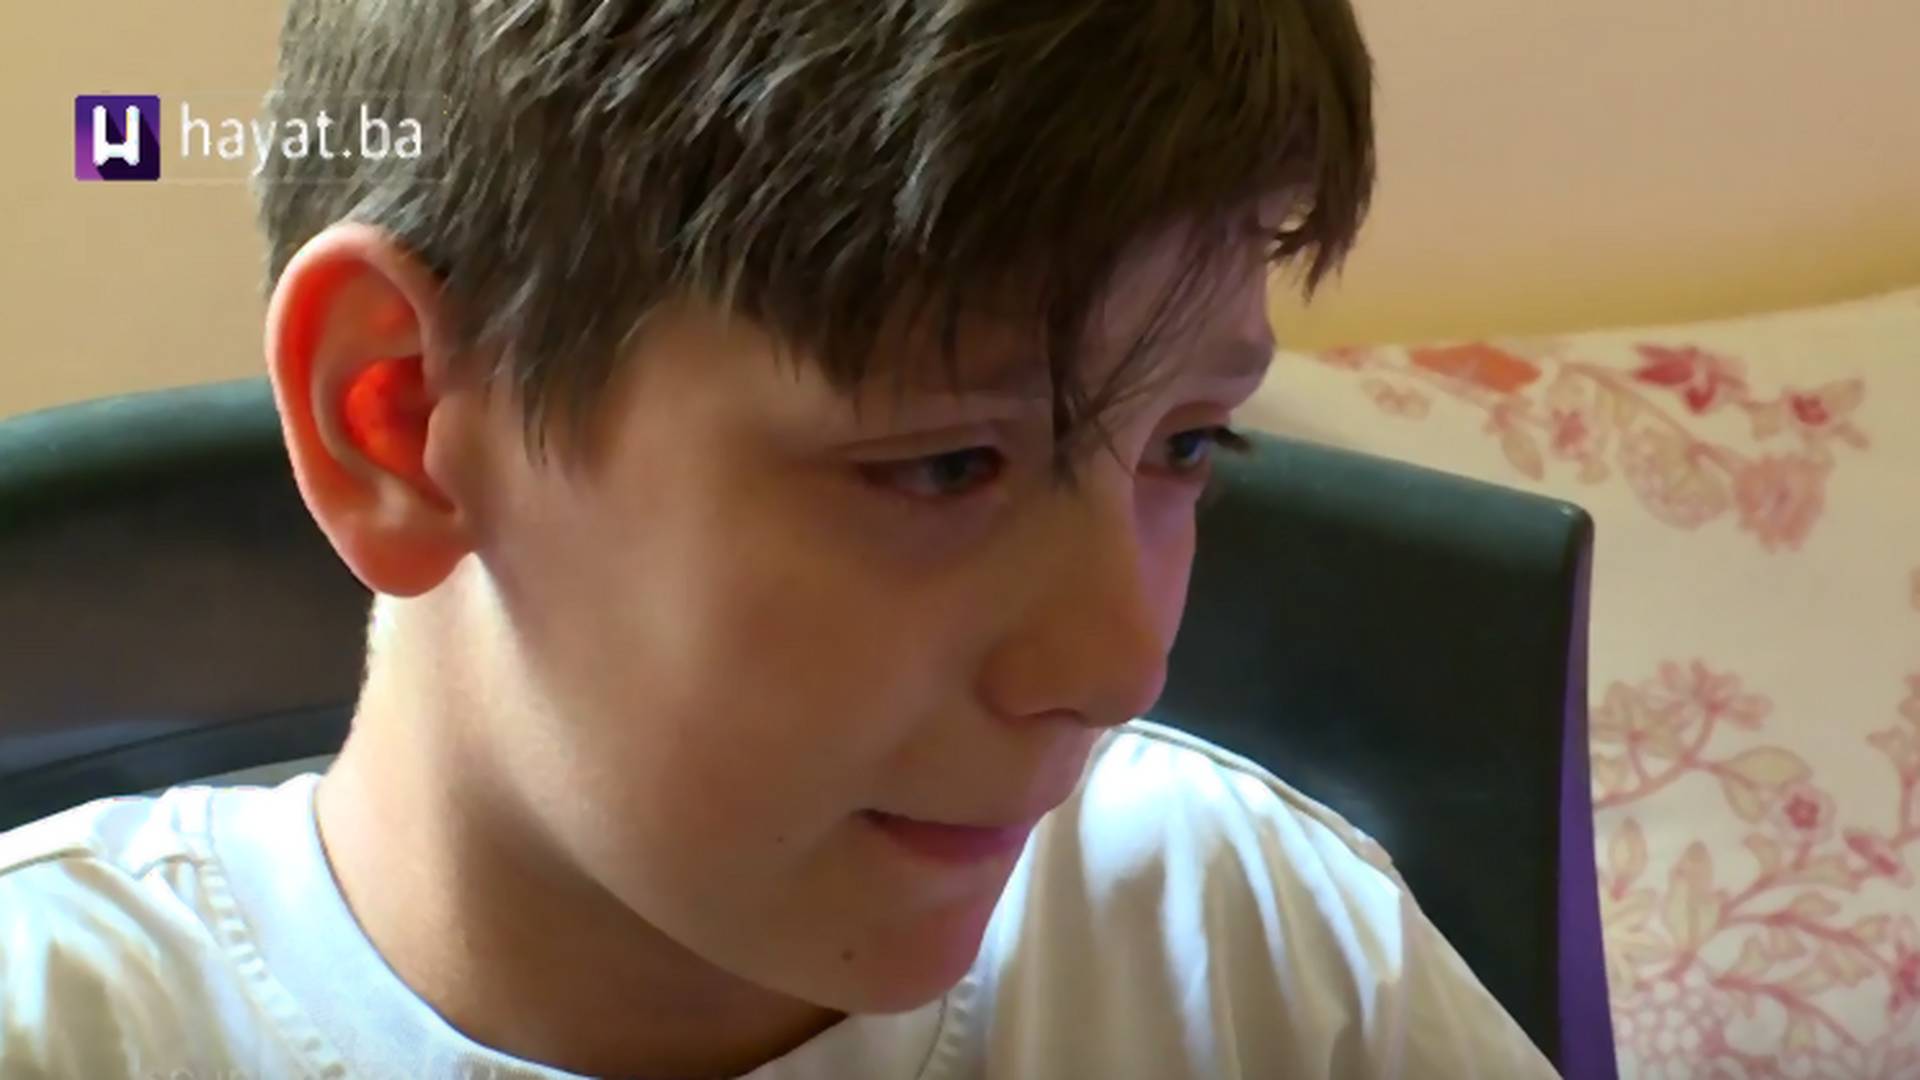 "Nisam jeo ni juče ni prekjuče": Ispovest dečaka Alena iz Zenice je definicija tuge